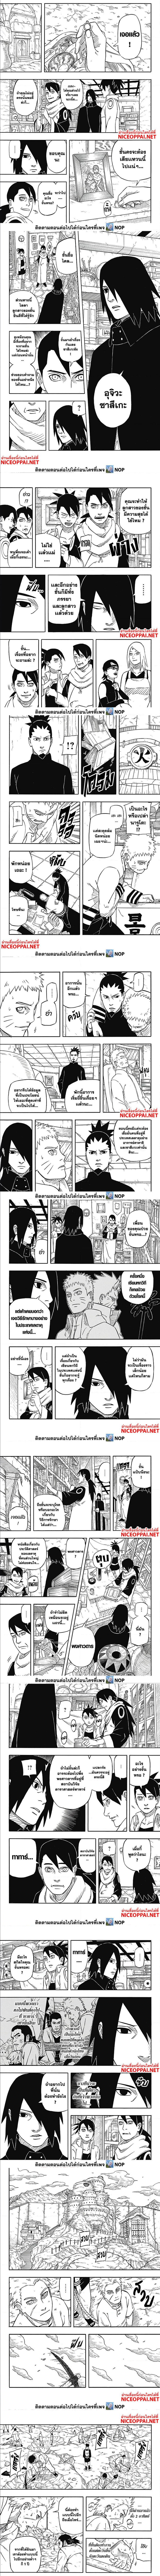 Naruto Sasuke’s Story The Uchiha and the Heavenly Stardust ตอนที่ 1 (5)